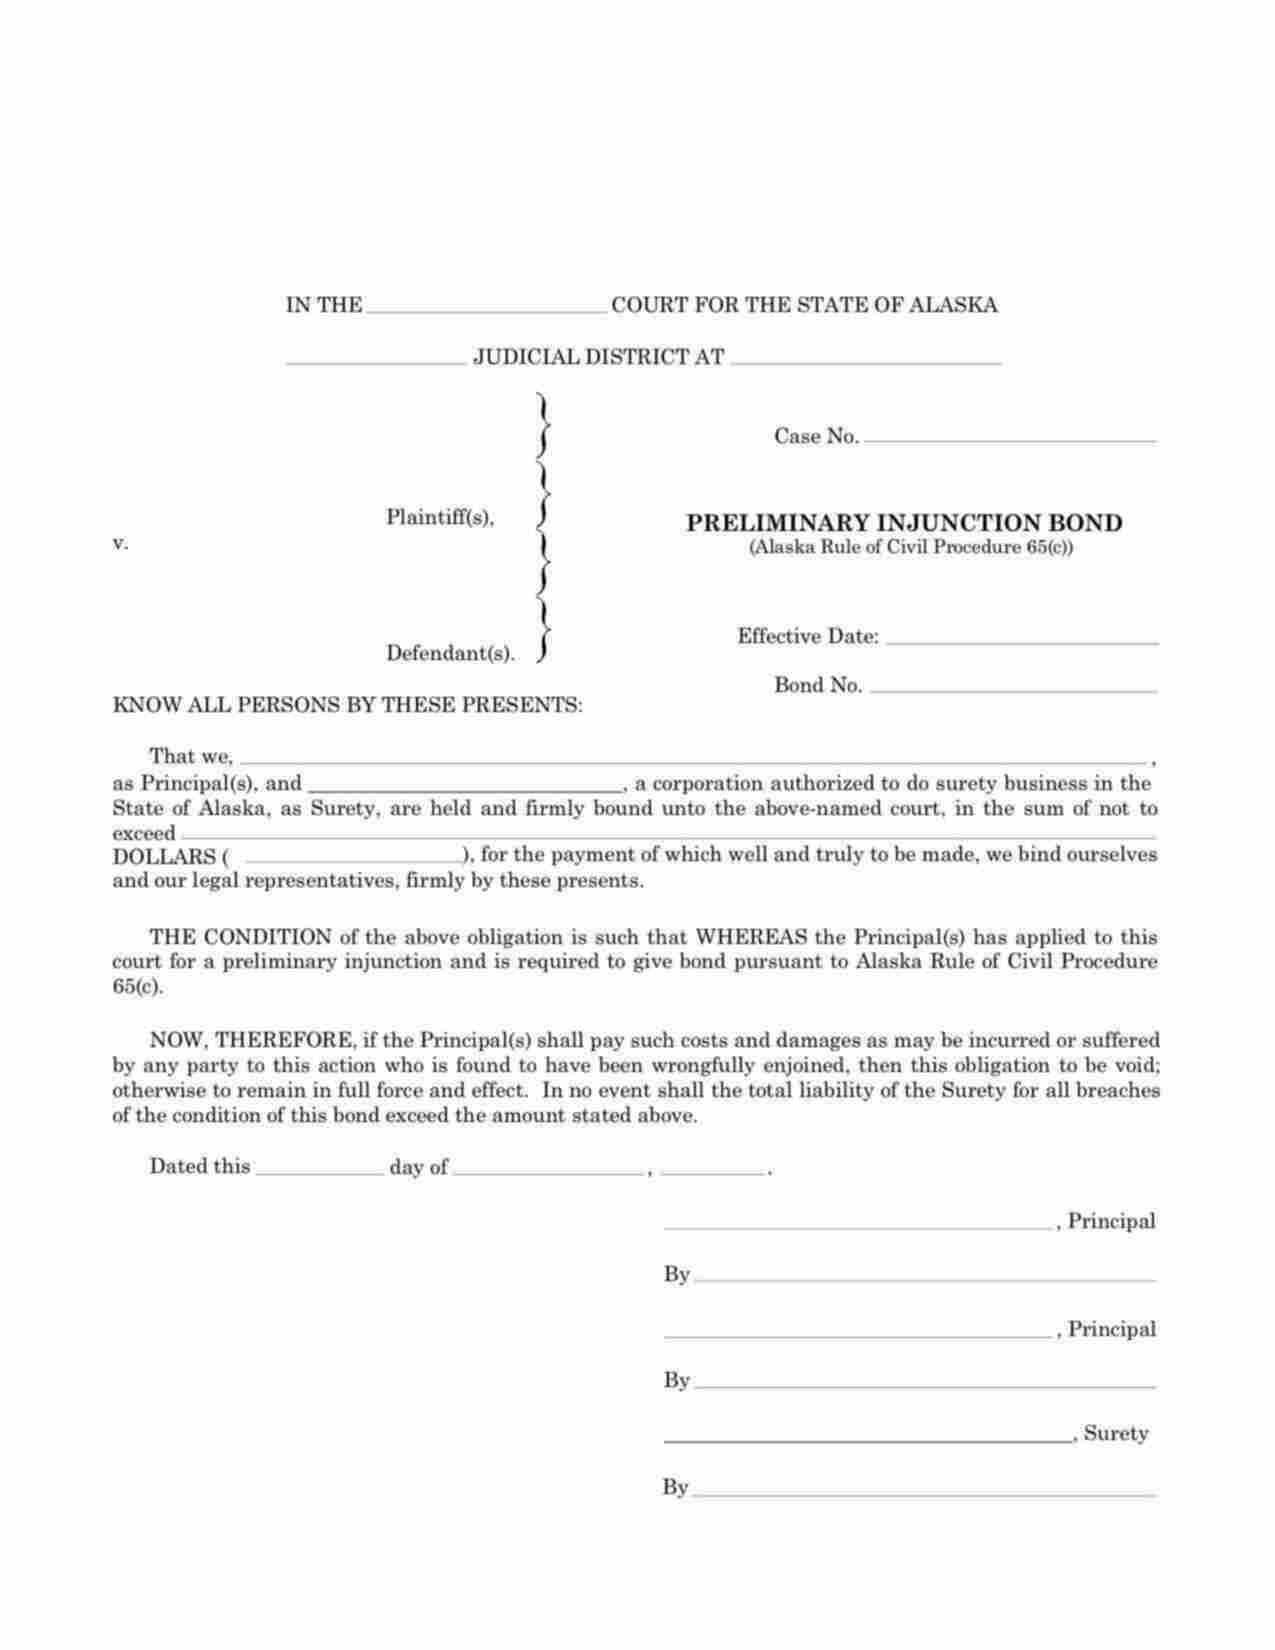 Alaska Preliminary Injunction Bond Form